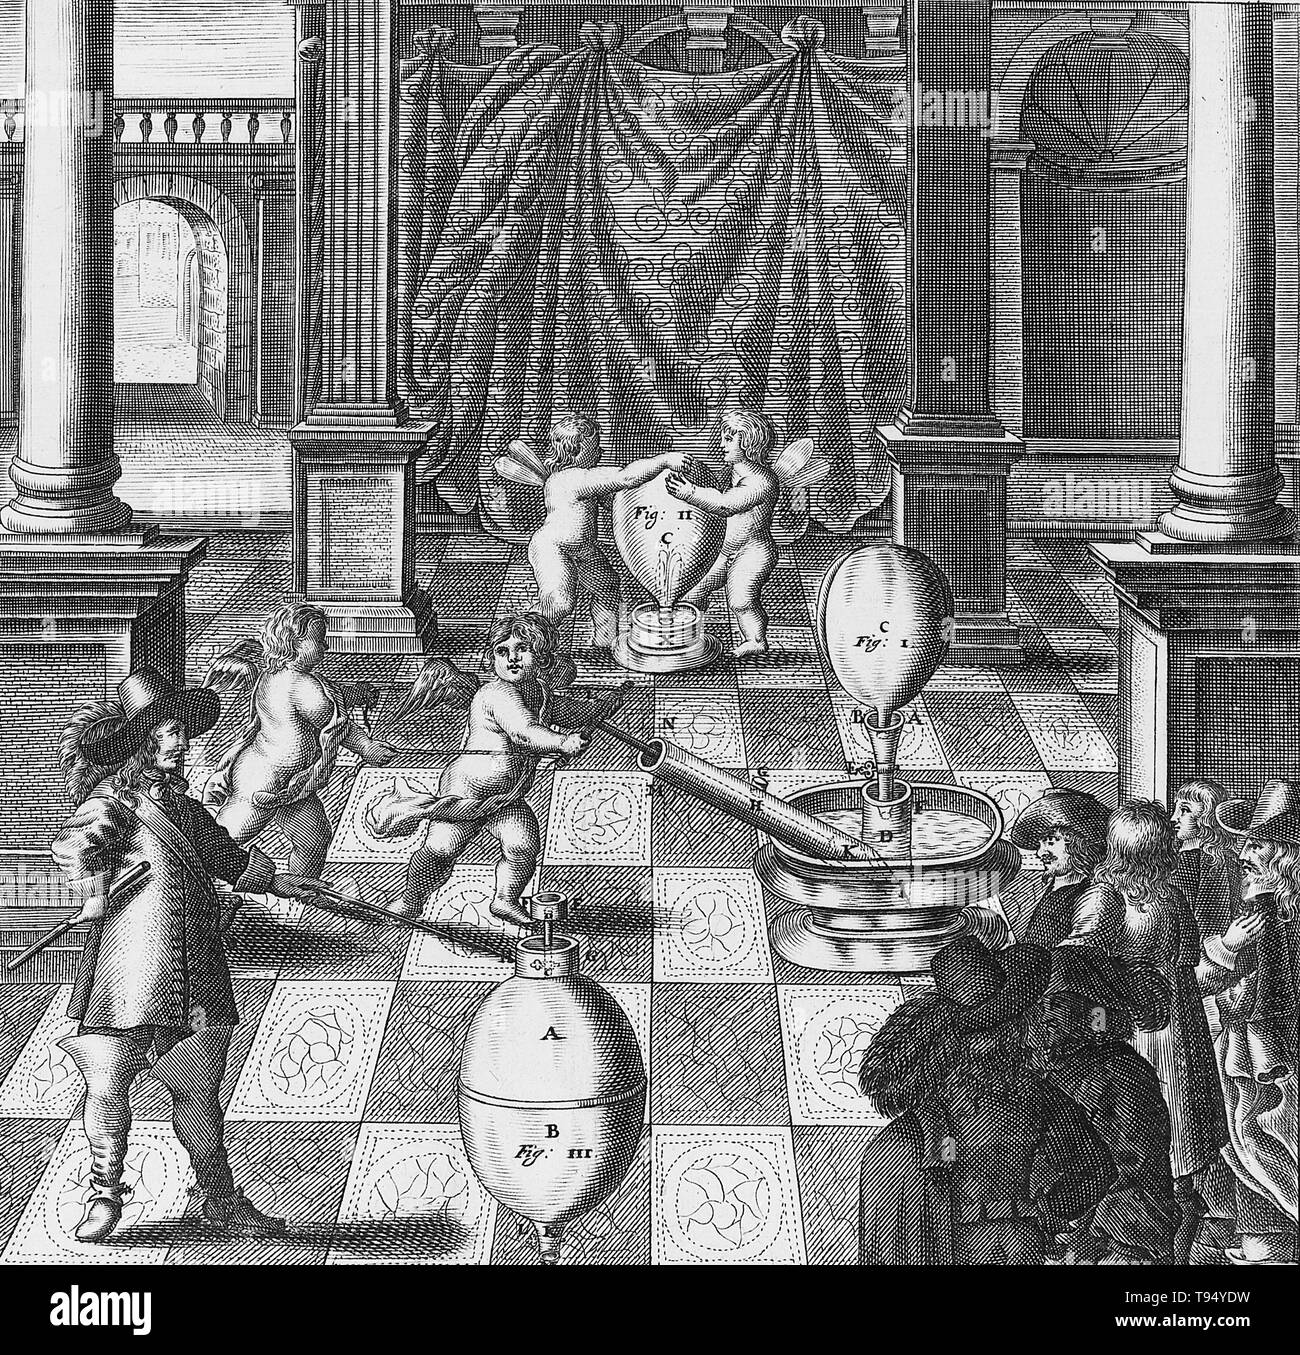 Otto-von-Guericke-Universität und seine Luftpumpe. Von "echanica - Hydraulico-pneumatica" von Kaspar Schott. Veröffentlicht, 1657. Otto-von-Guericke-Universität (1602-1686) war ein deutscher Wissenschaftler, Erfinder und Politiker. Seine großen wissenschaftlichen Errungenschaften waren die Errichtung der Physik der Staubsauger, die Entdeckung einer experimentellen Methode für deutlich, elektrostatische Abstoßung, und sein Eintreten für die Realität der Aktion in einem Abstand und der absoluten Raum. Stockfoto